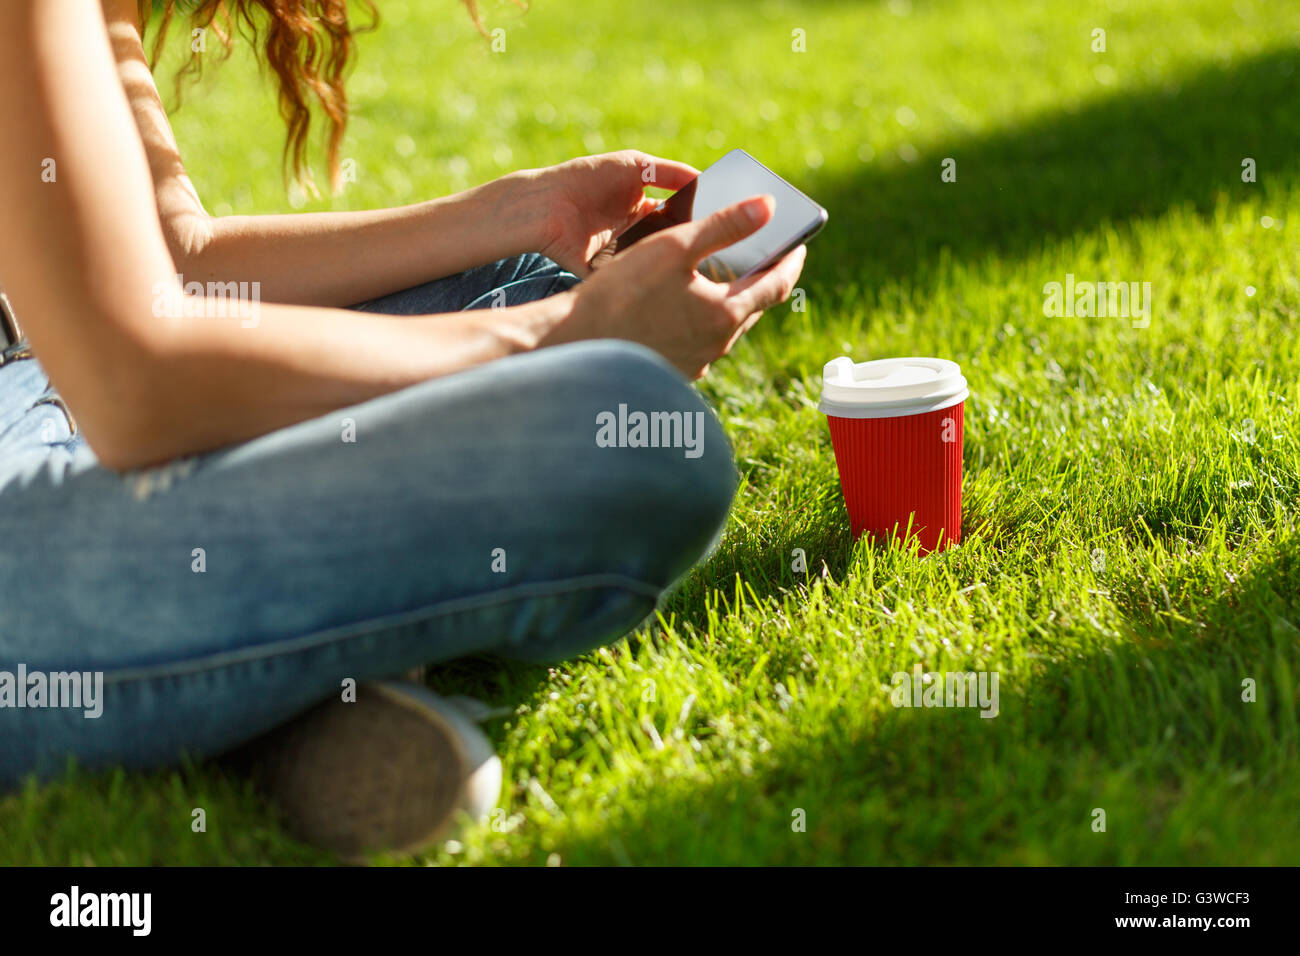 Junge Frau mit roten Einweg-Pappbecher Kaffee mit Tablet-pc auf einem grünen Rasen in einem park Stockfoto